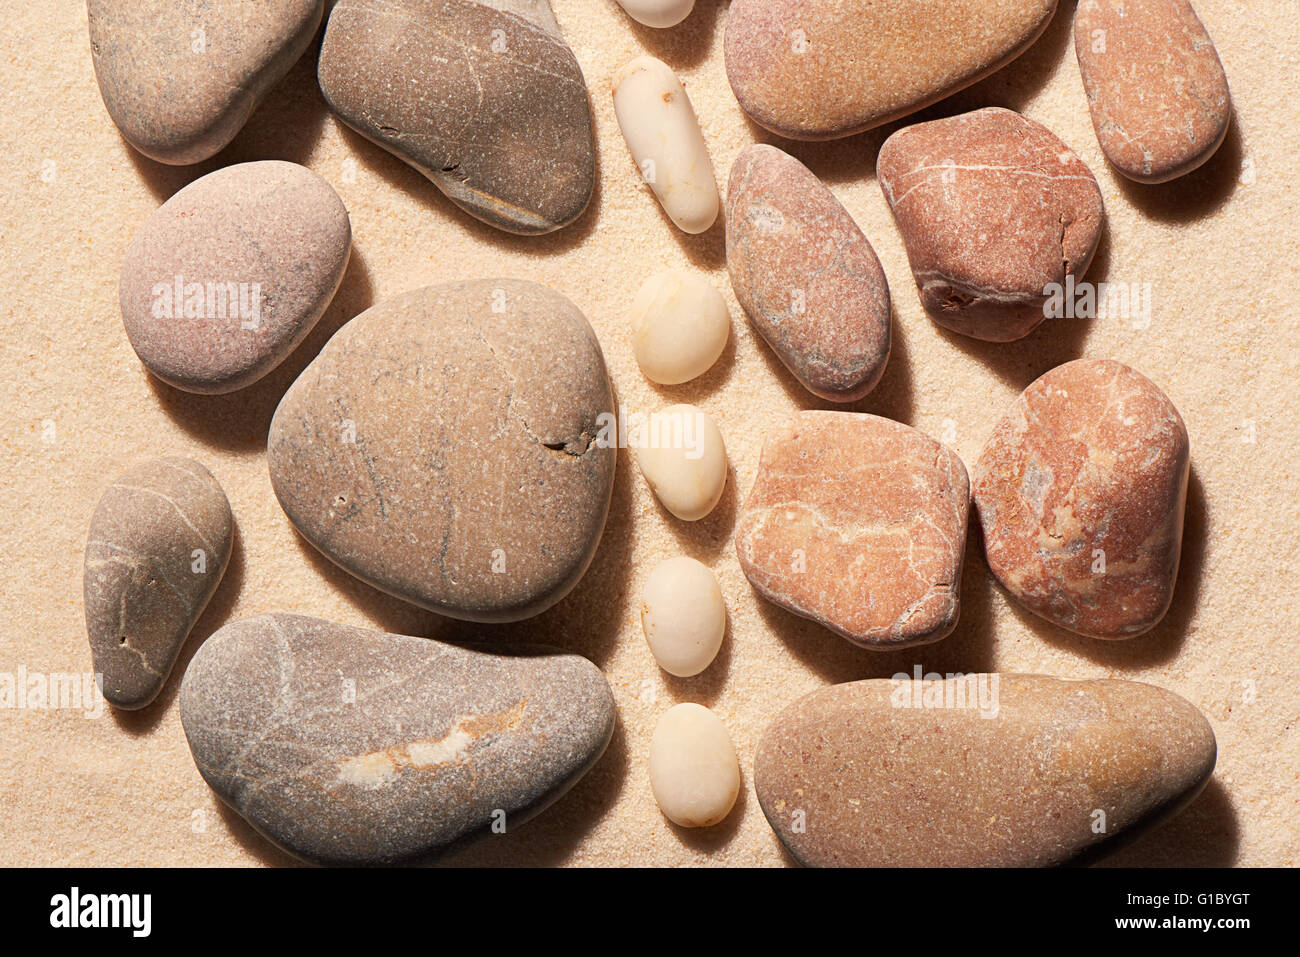 Sammlungen von rosa und grau getönten Meer Steinen durch vertikalen Streifen von kleineren weißen Steinen auf Sand getrennt. Sommerstrand Stockfoto